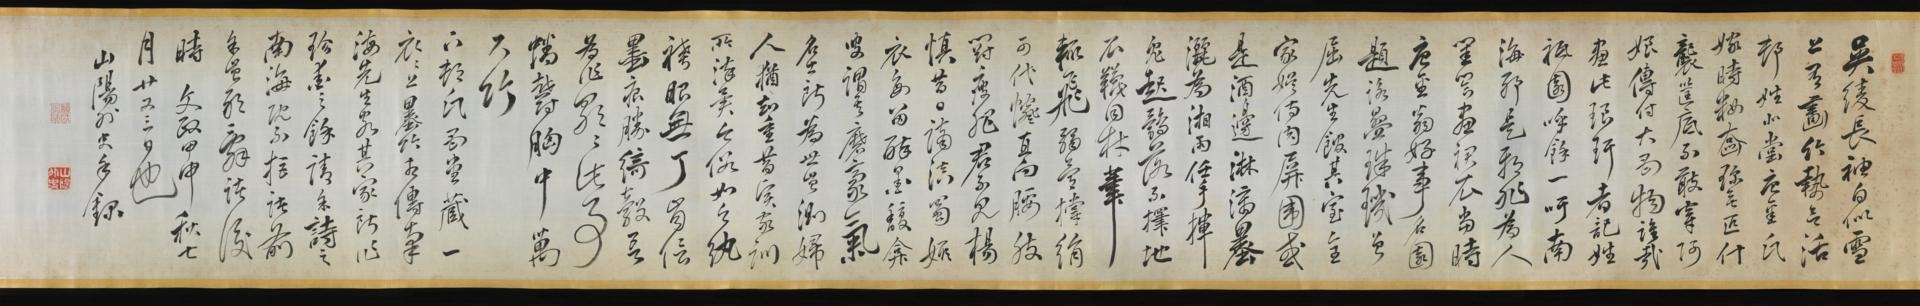 日本江户时期草书手卷绢本30.2-x-296.5-cm